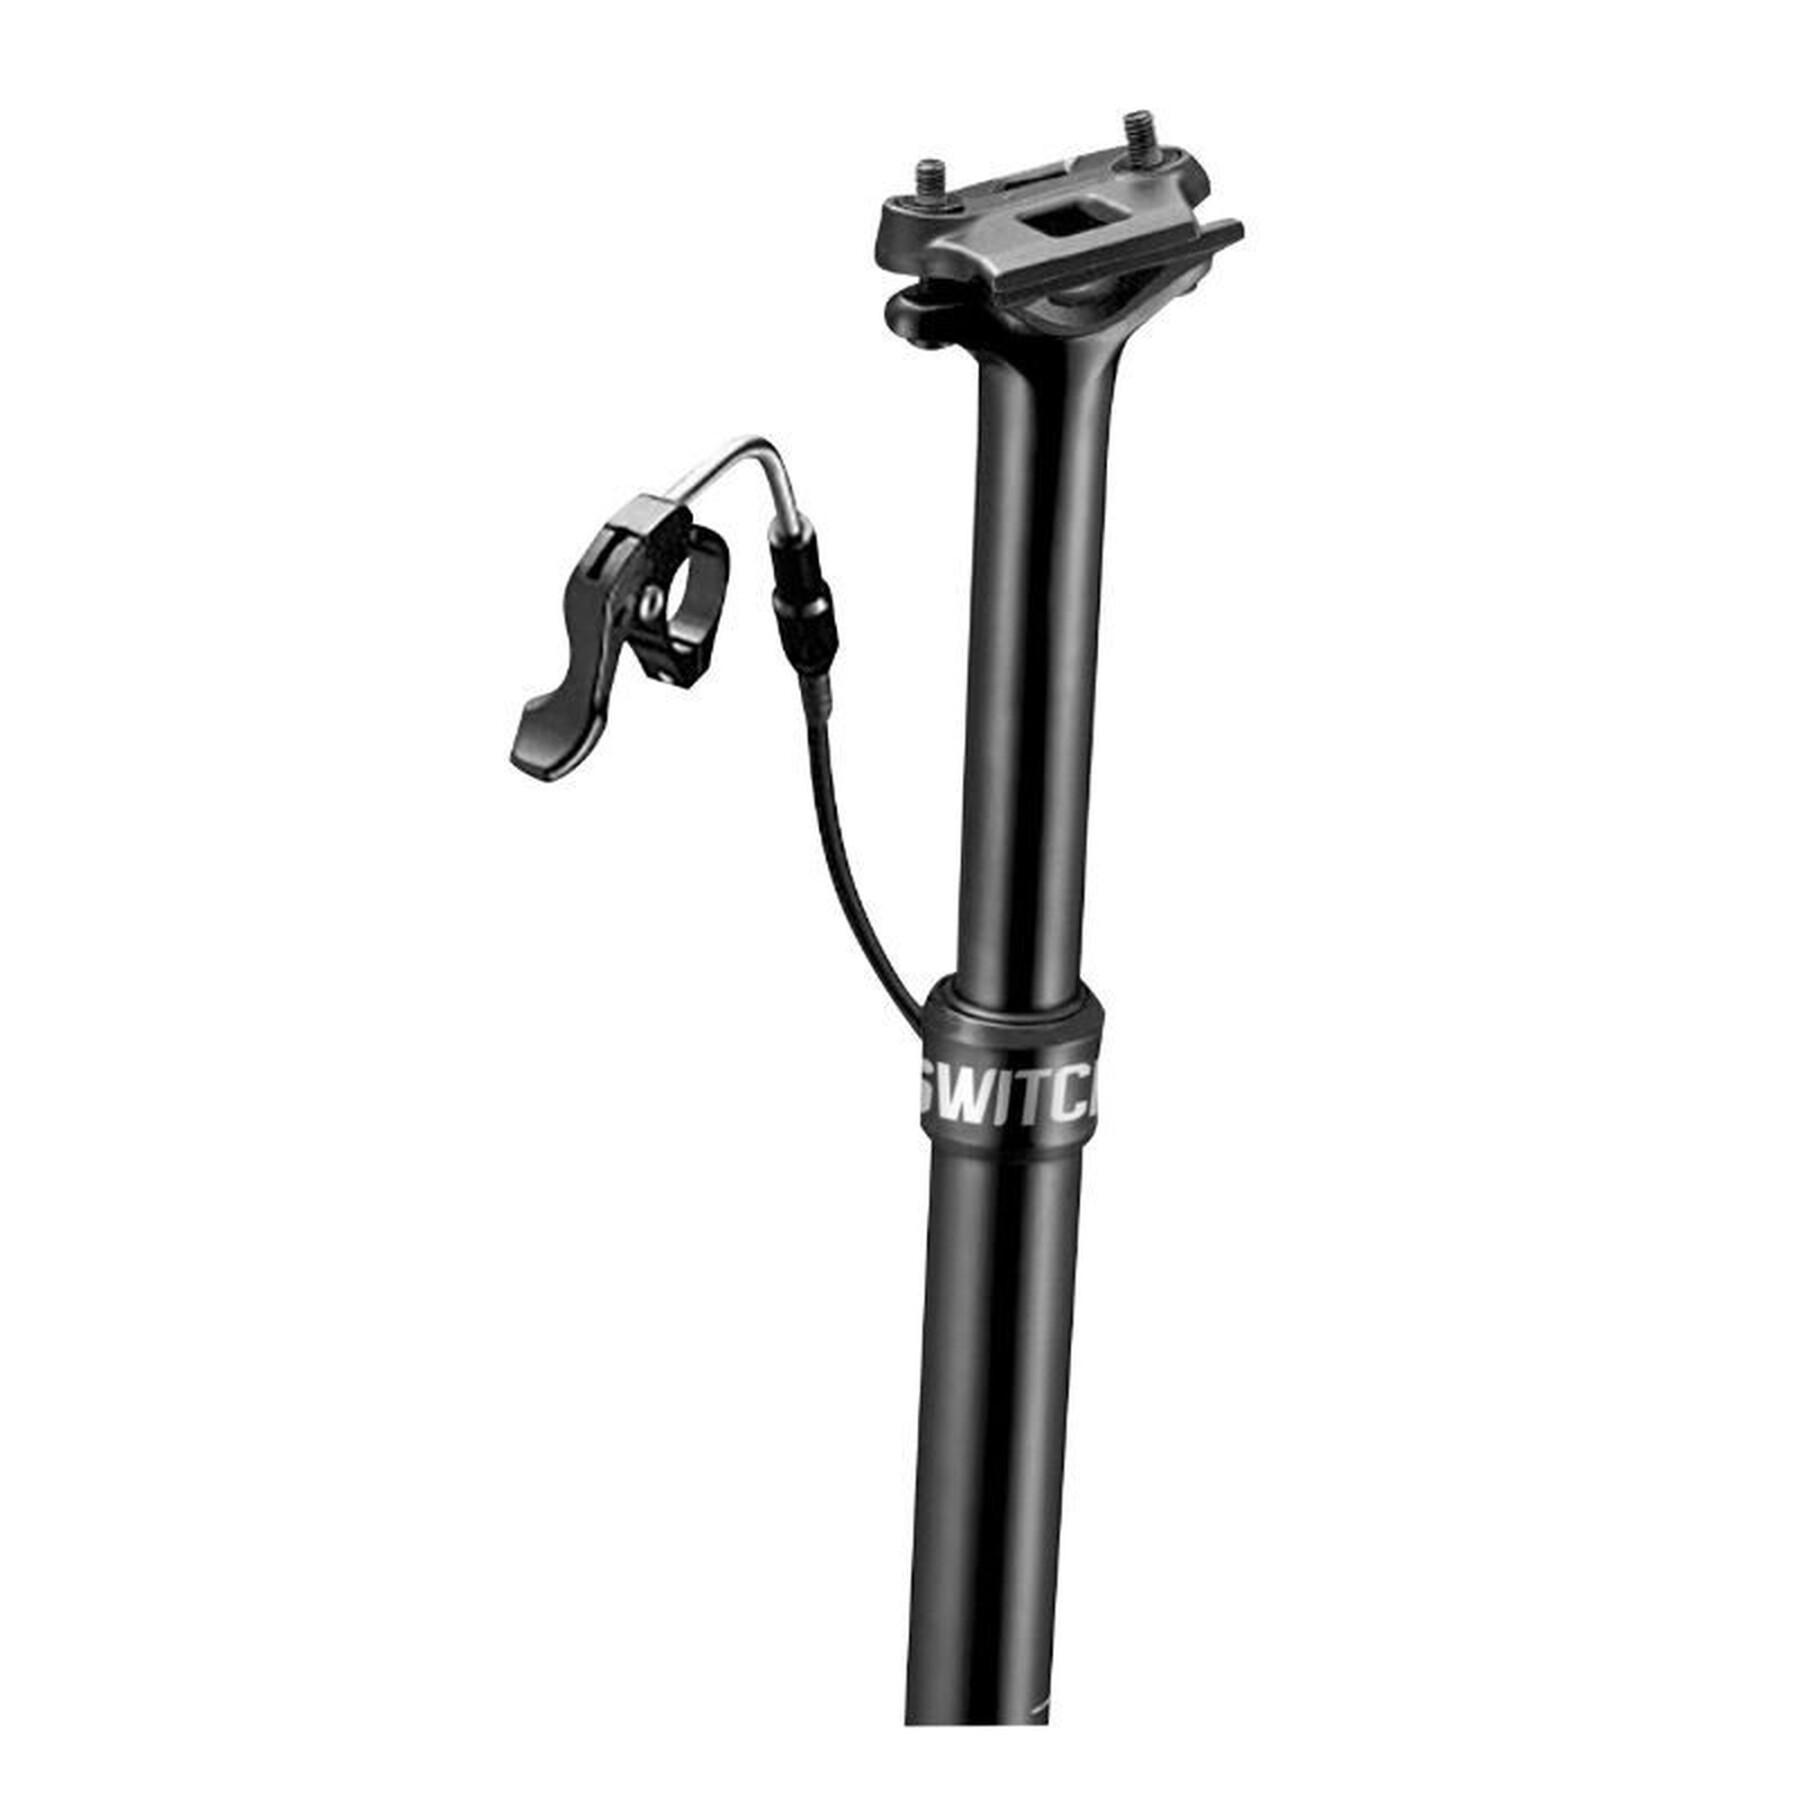 Justerbar sadelstolpe för mountainbike med intern kabel och tryckluftspatron i aluminium för centrerad fixering av slaglängd Gist Switch SW-80